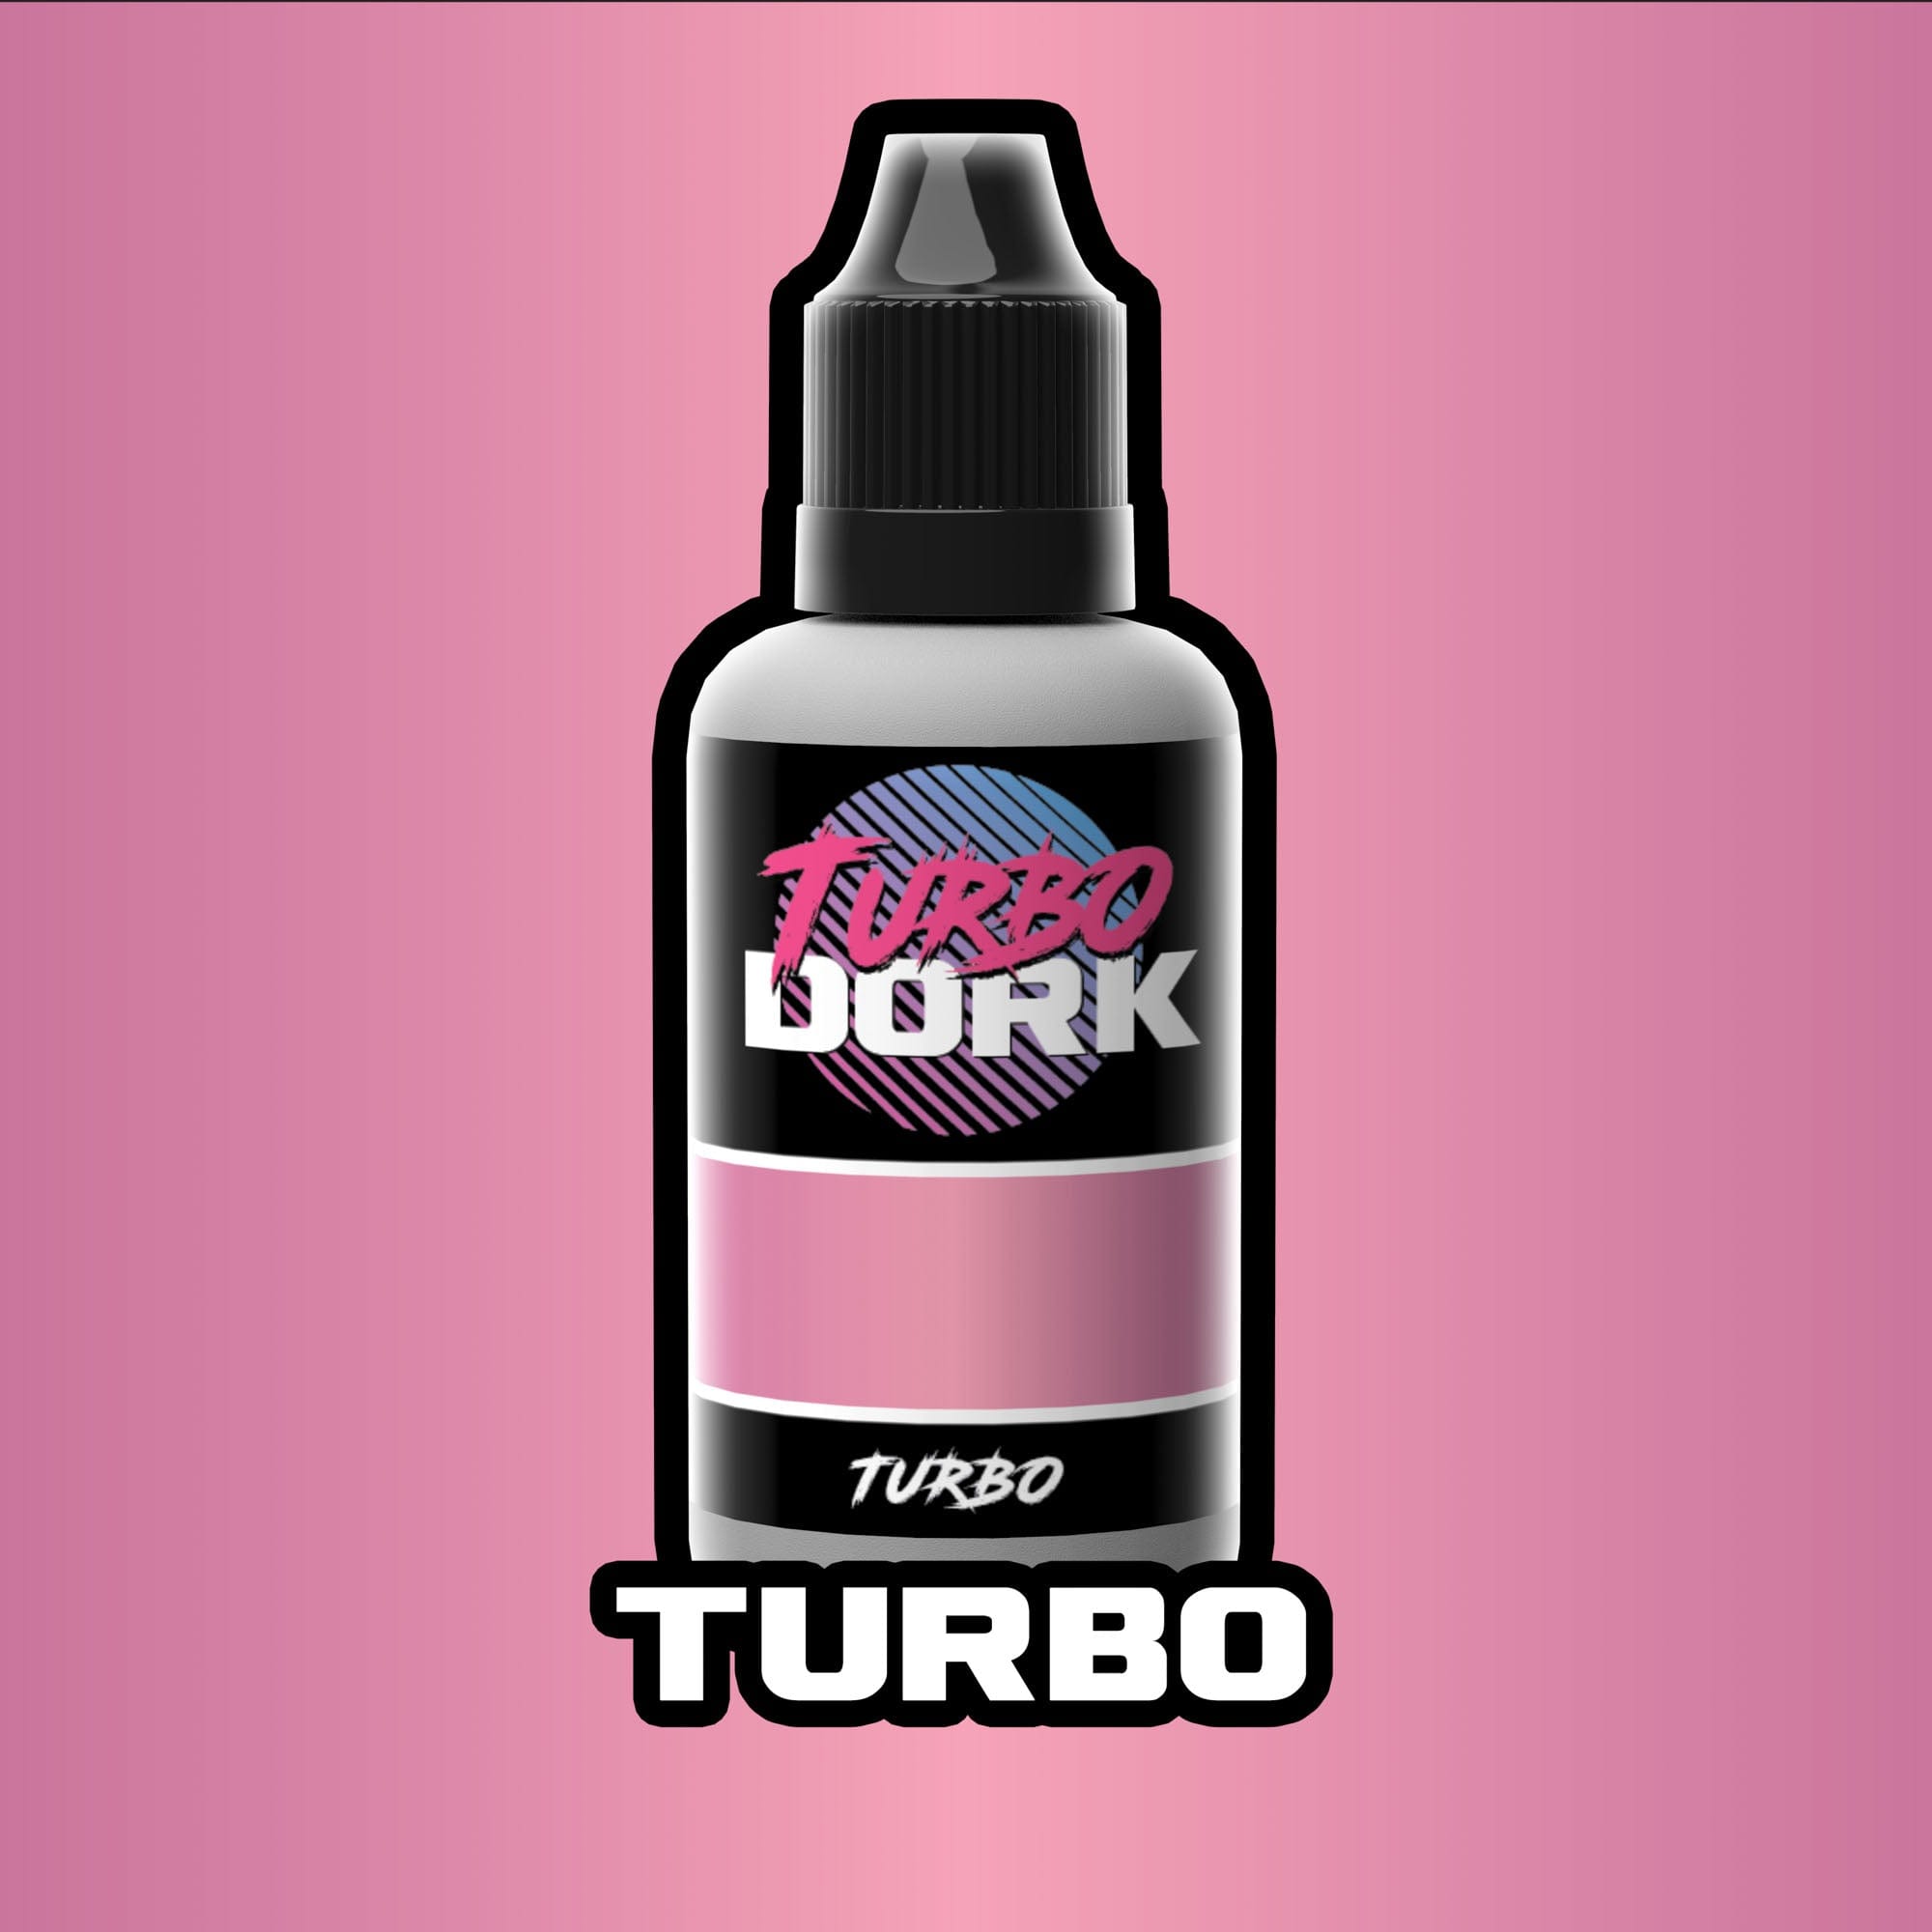 Turbo Dork Small White Silicone Dry Palette